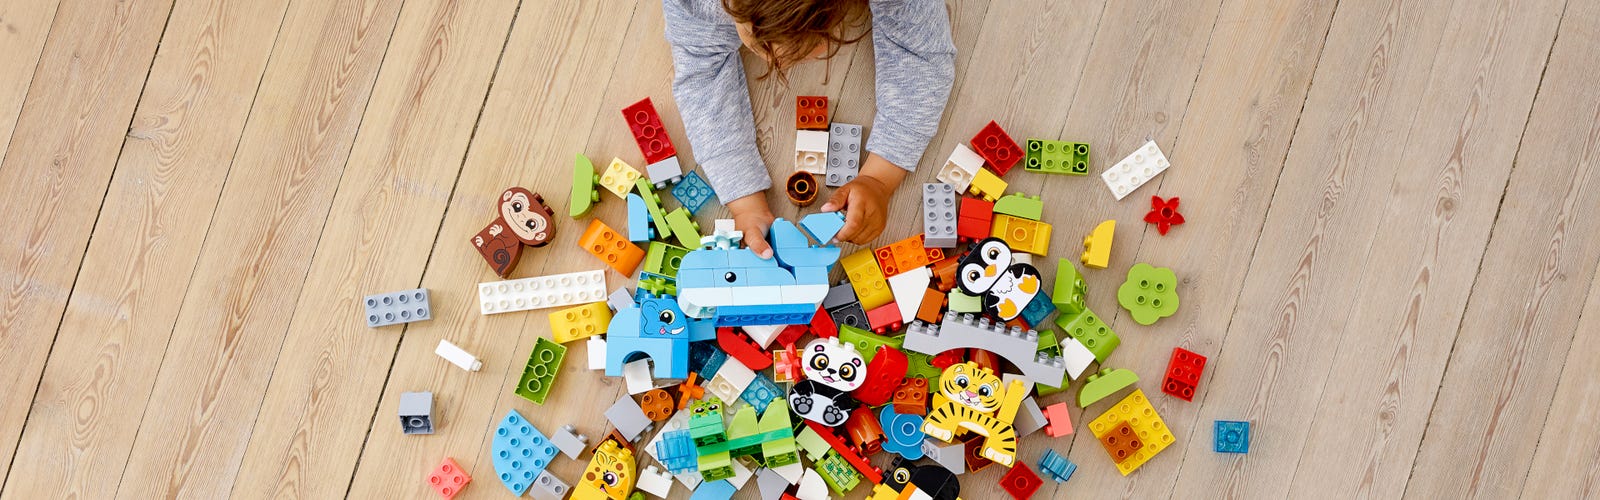 DECOUVERTE] LEGO DUPLO TRAIN INTERACTIF : IL N'Y A PLUS DE